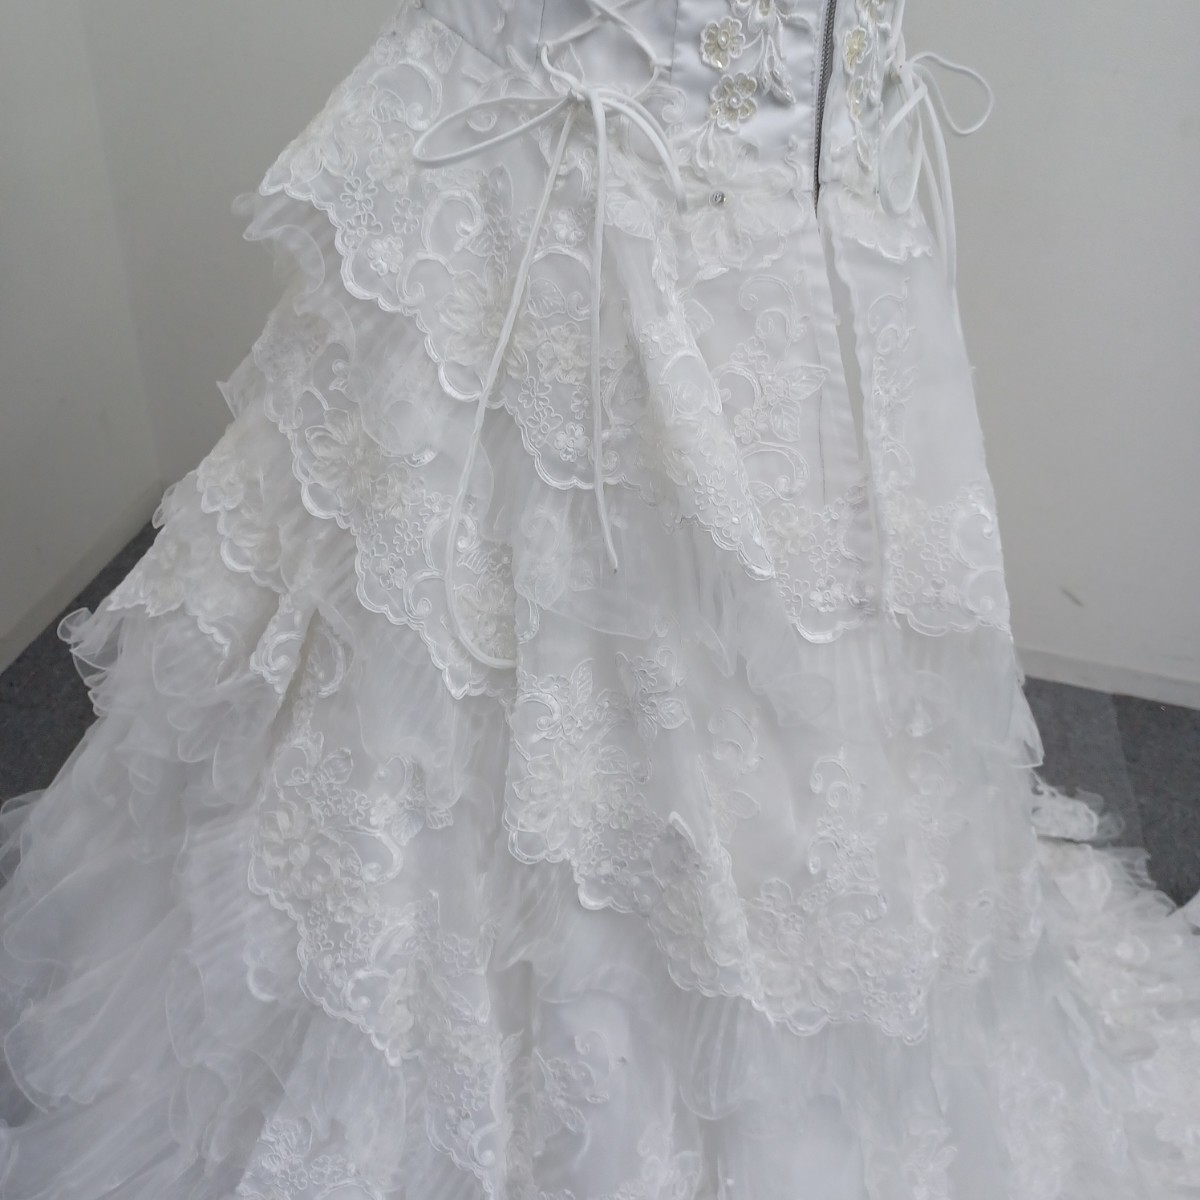  【送料無料】石) カラードレス ⑫ 大きいサイズ 白 ドレス 結婚式 パーティー 衣装 ウエディング ブライダル(240130)_画像6